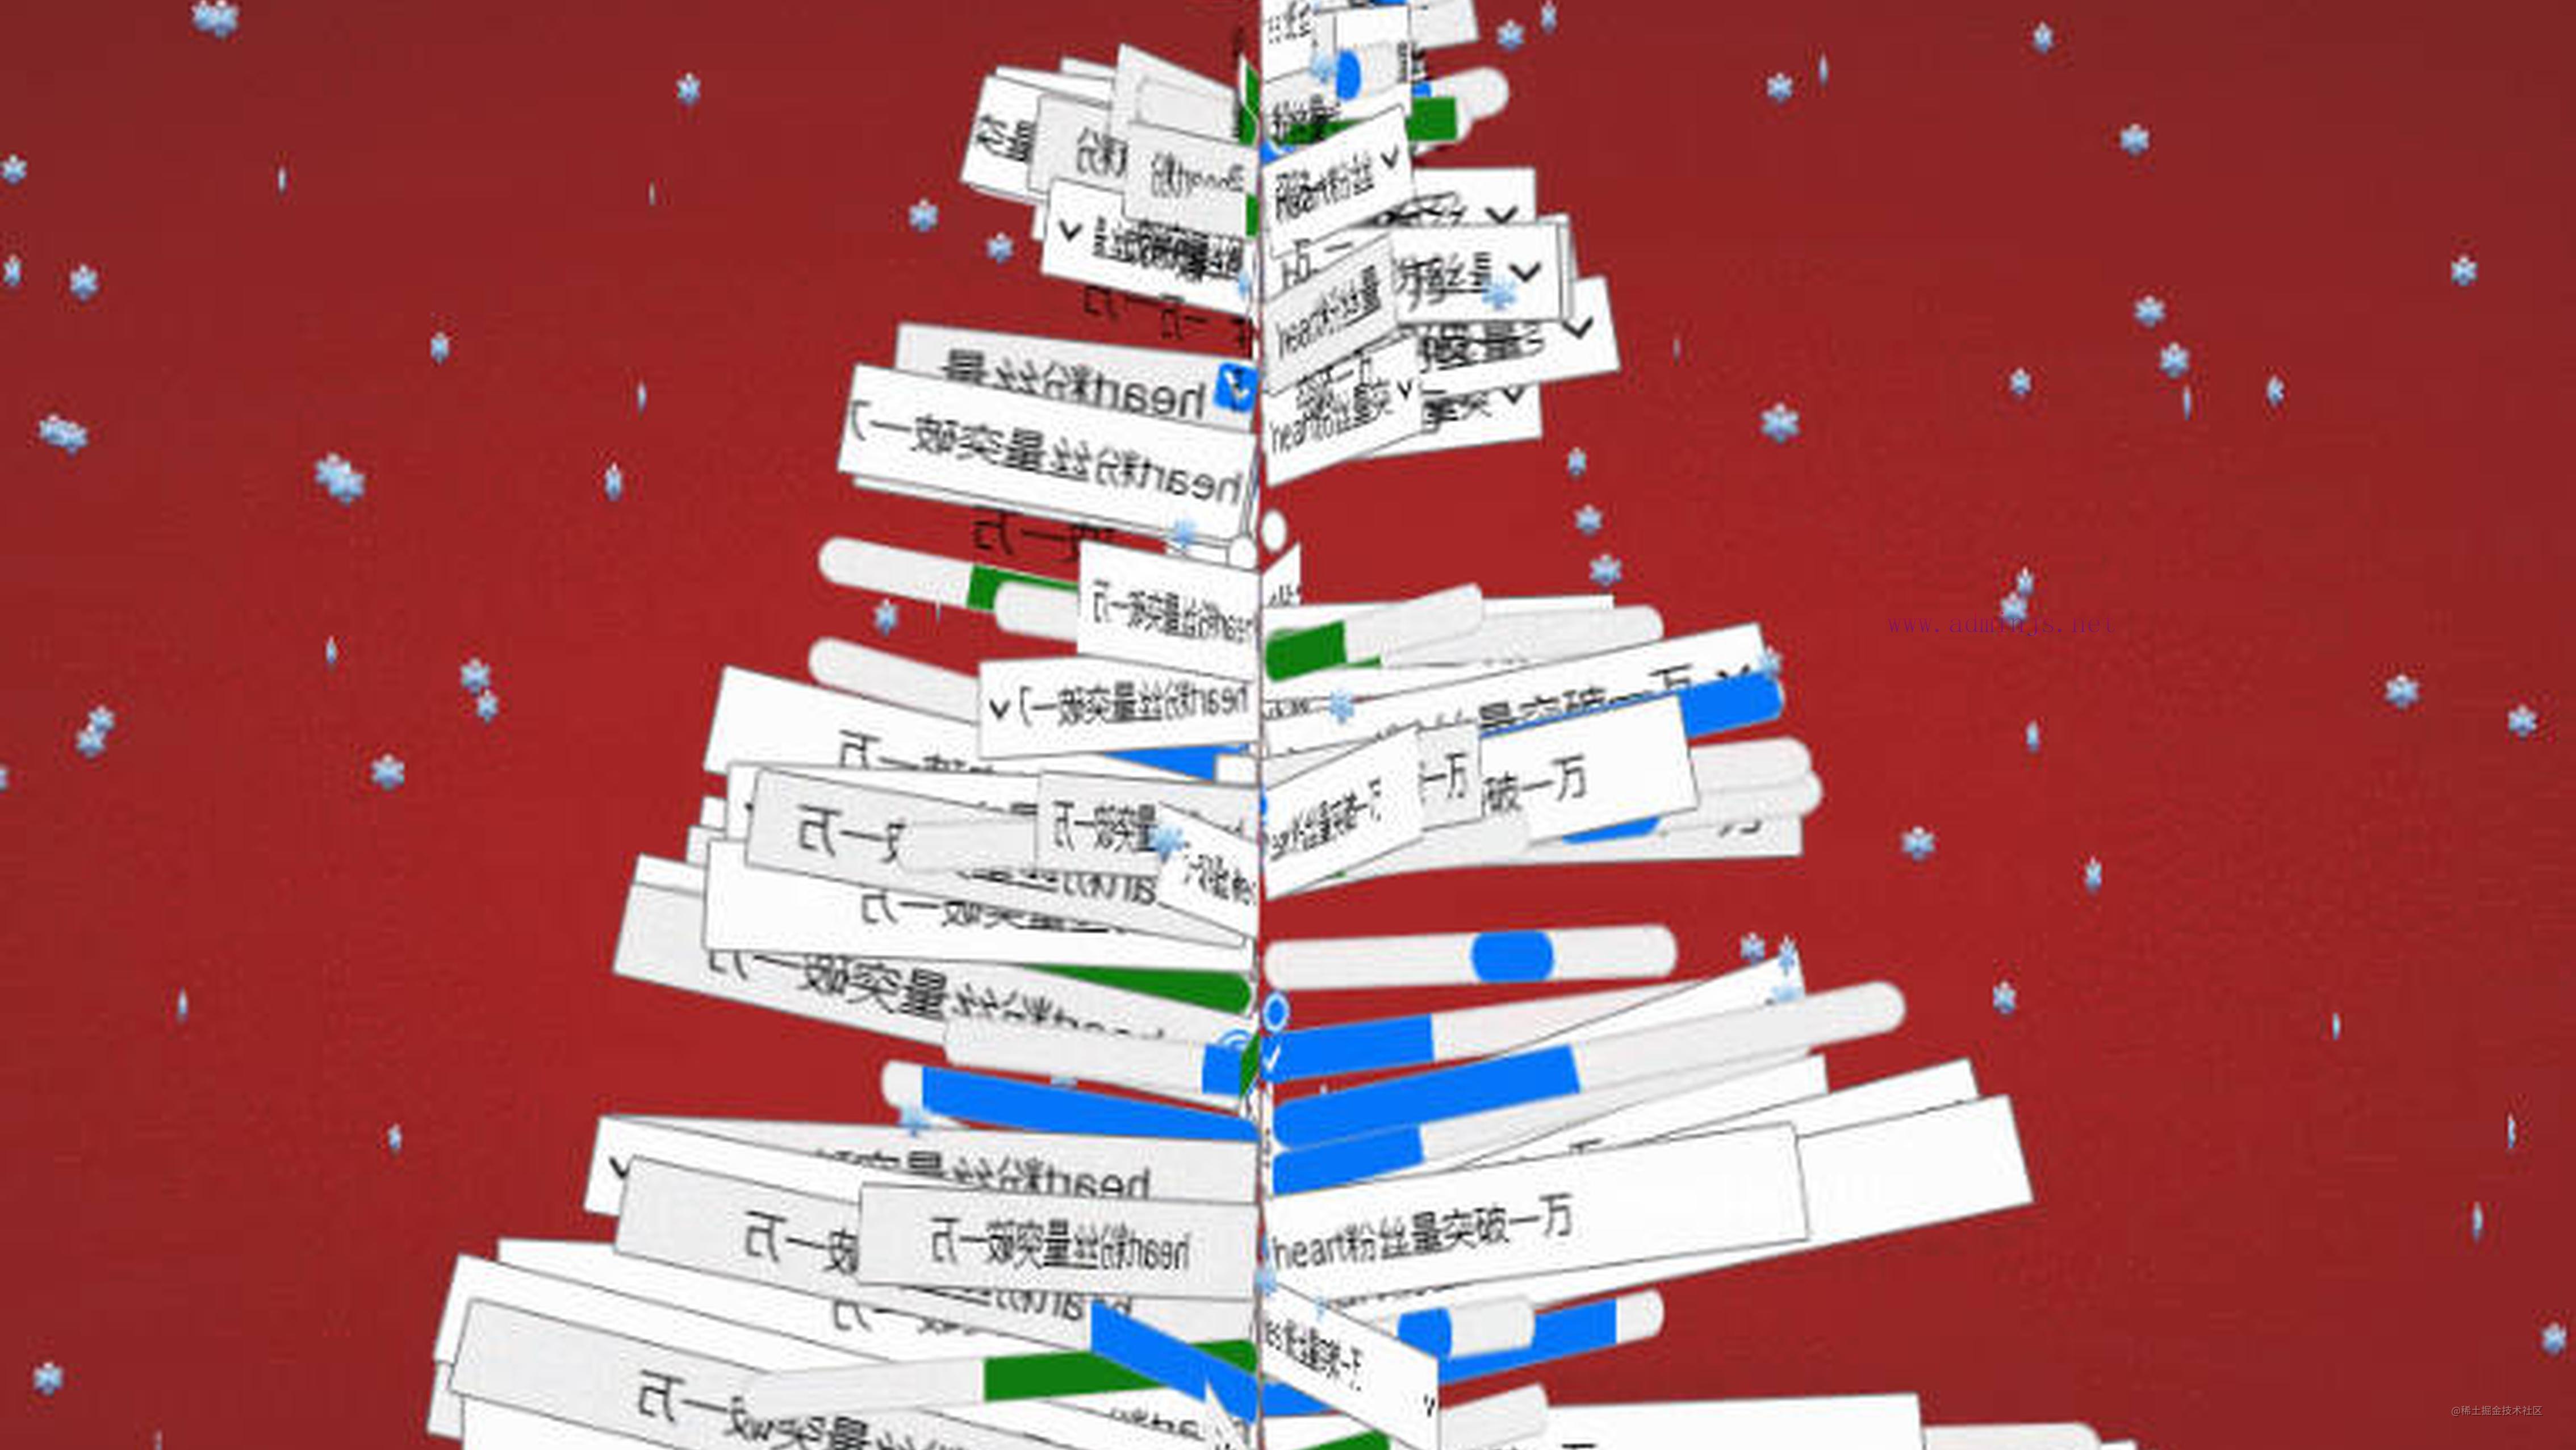 普普通通程序员的圣诞树